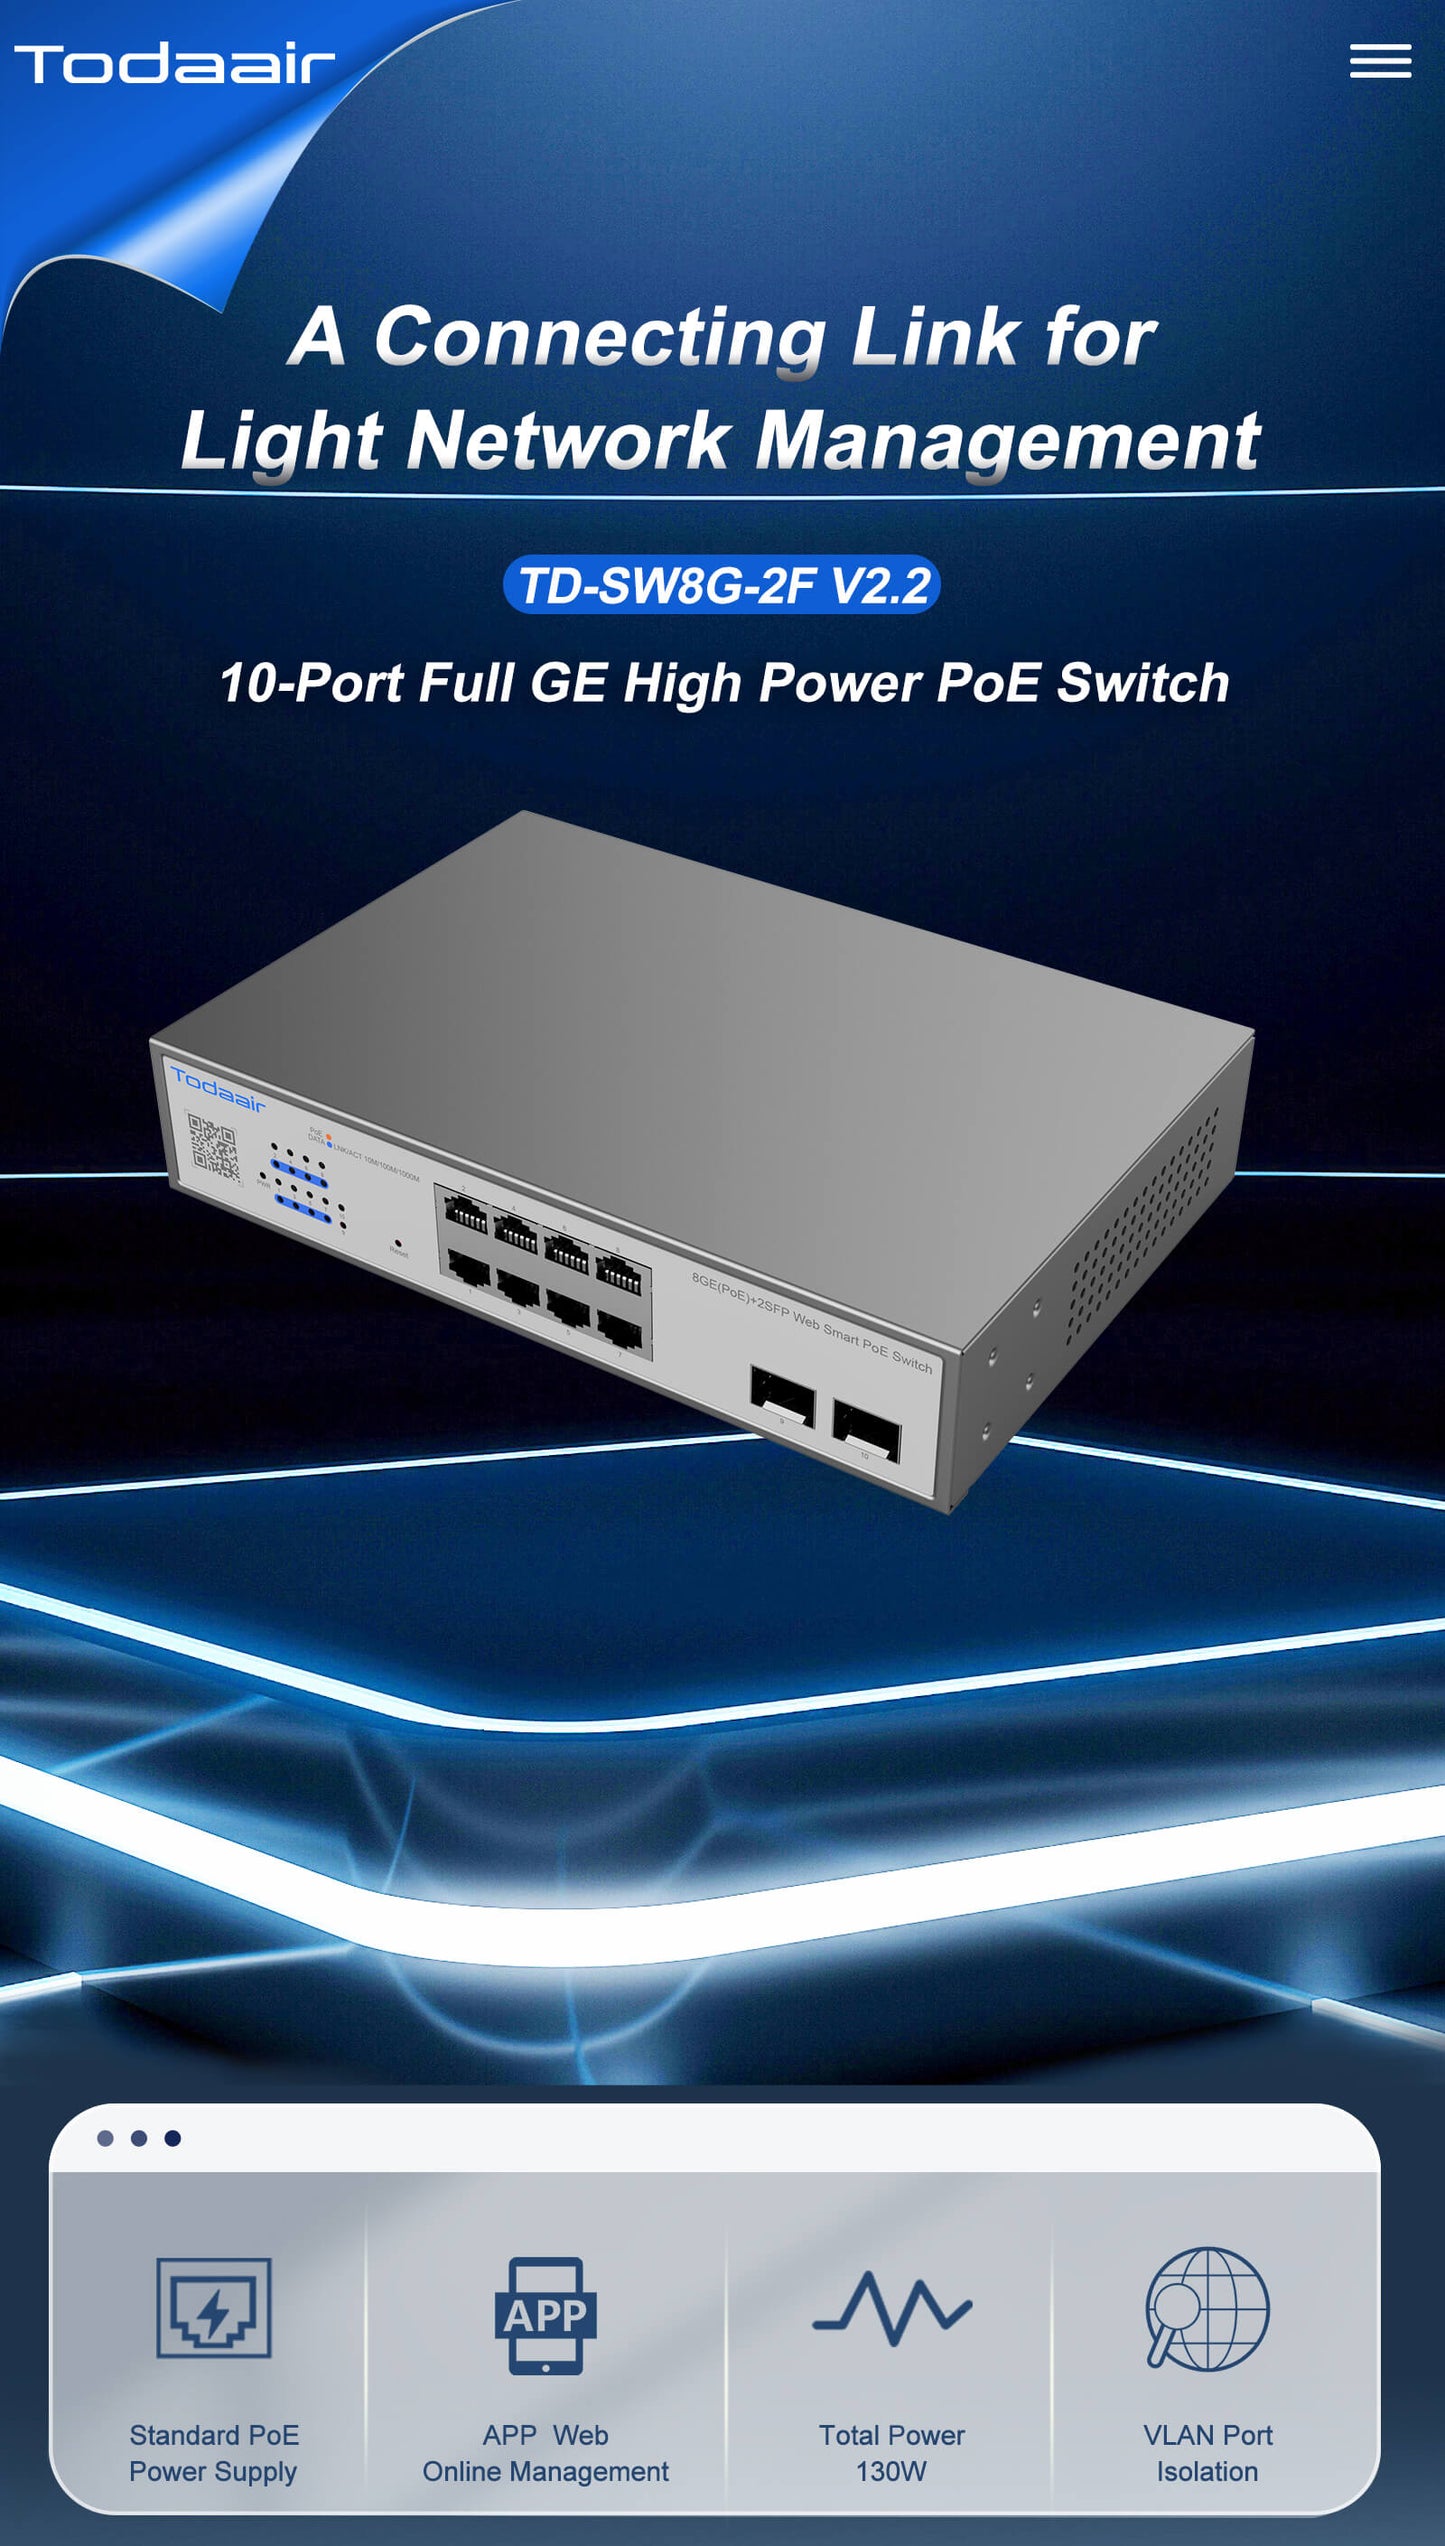 10 ports full gigabit high power poe network Switch